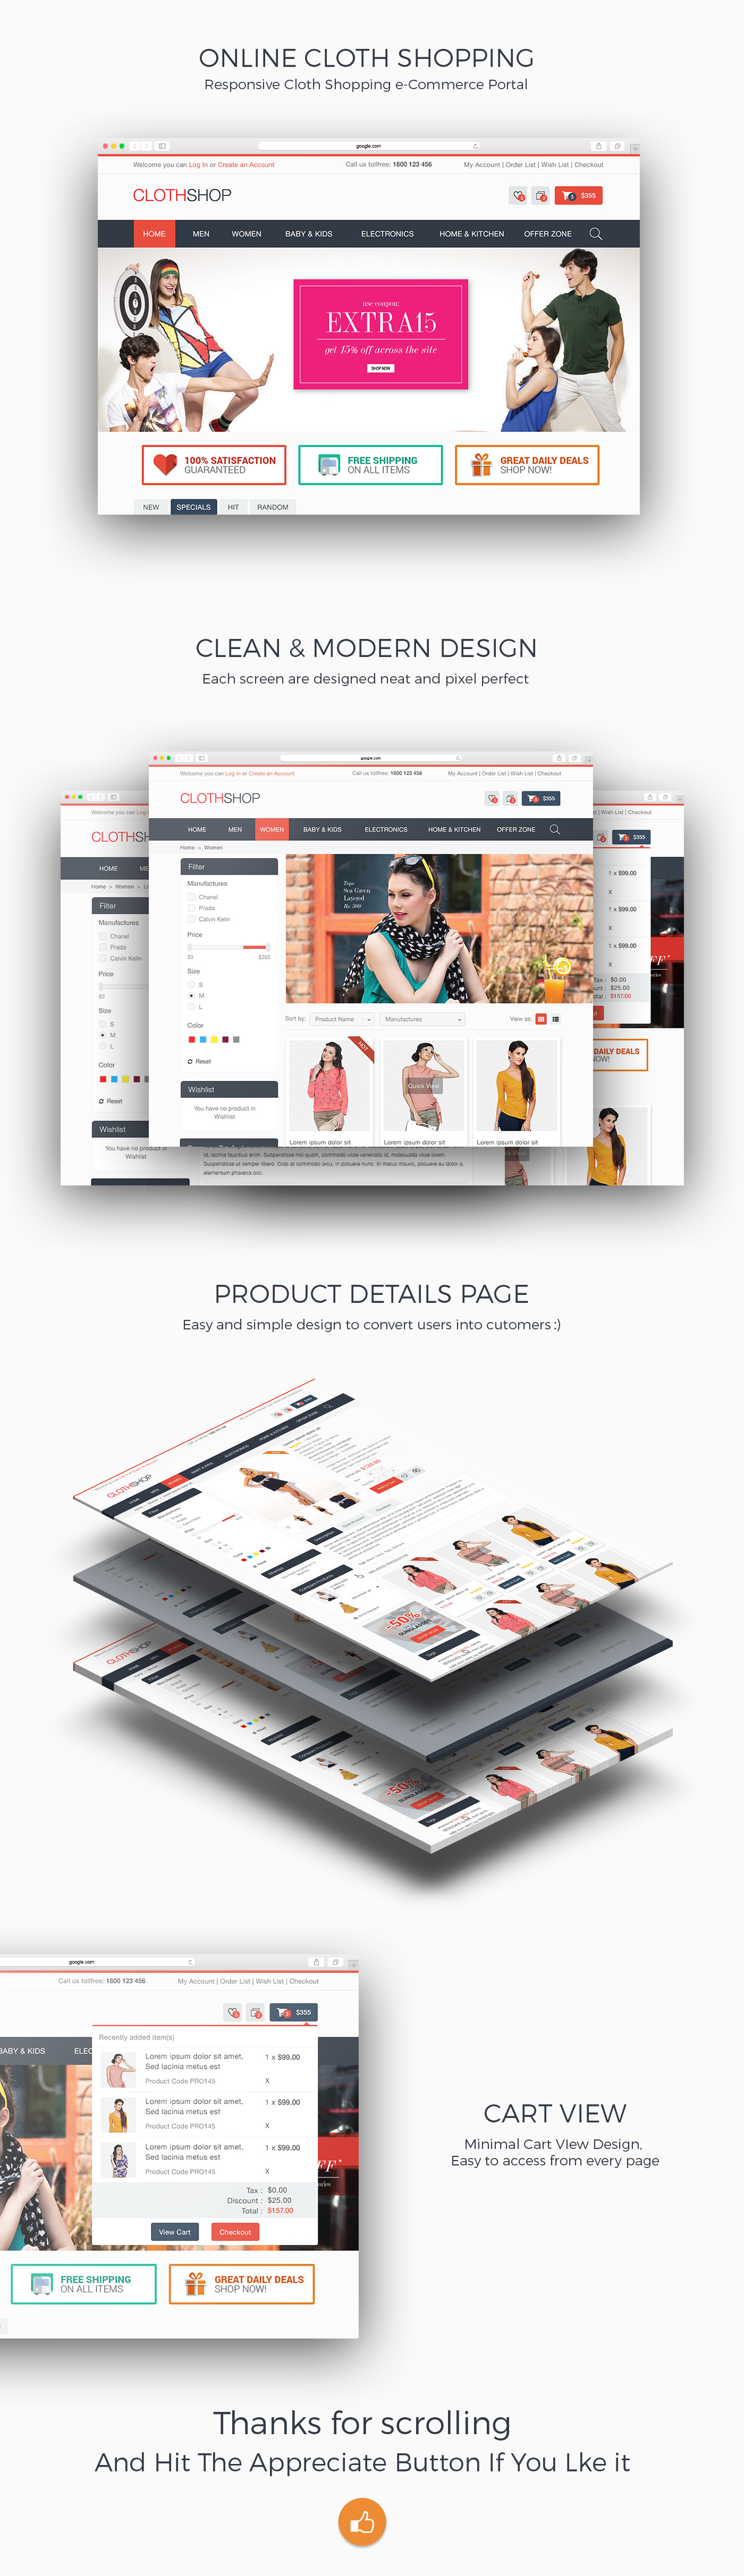 Icon template design Webdesign cloth shopping template Ecommerce free ecommerce template cloth Shopping